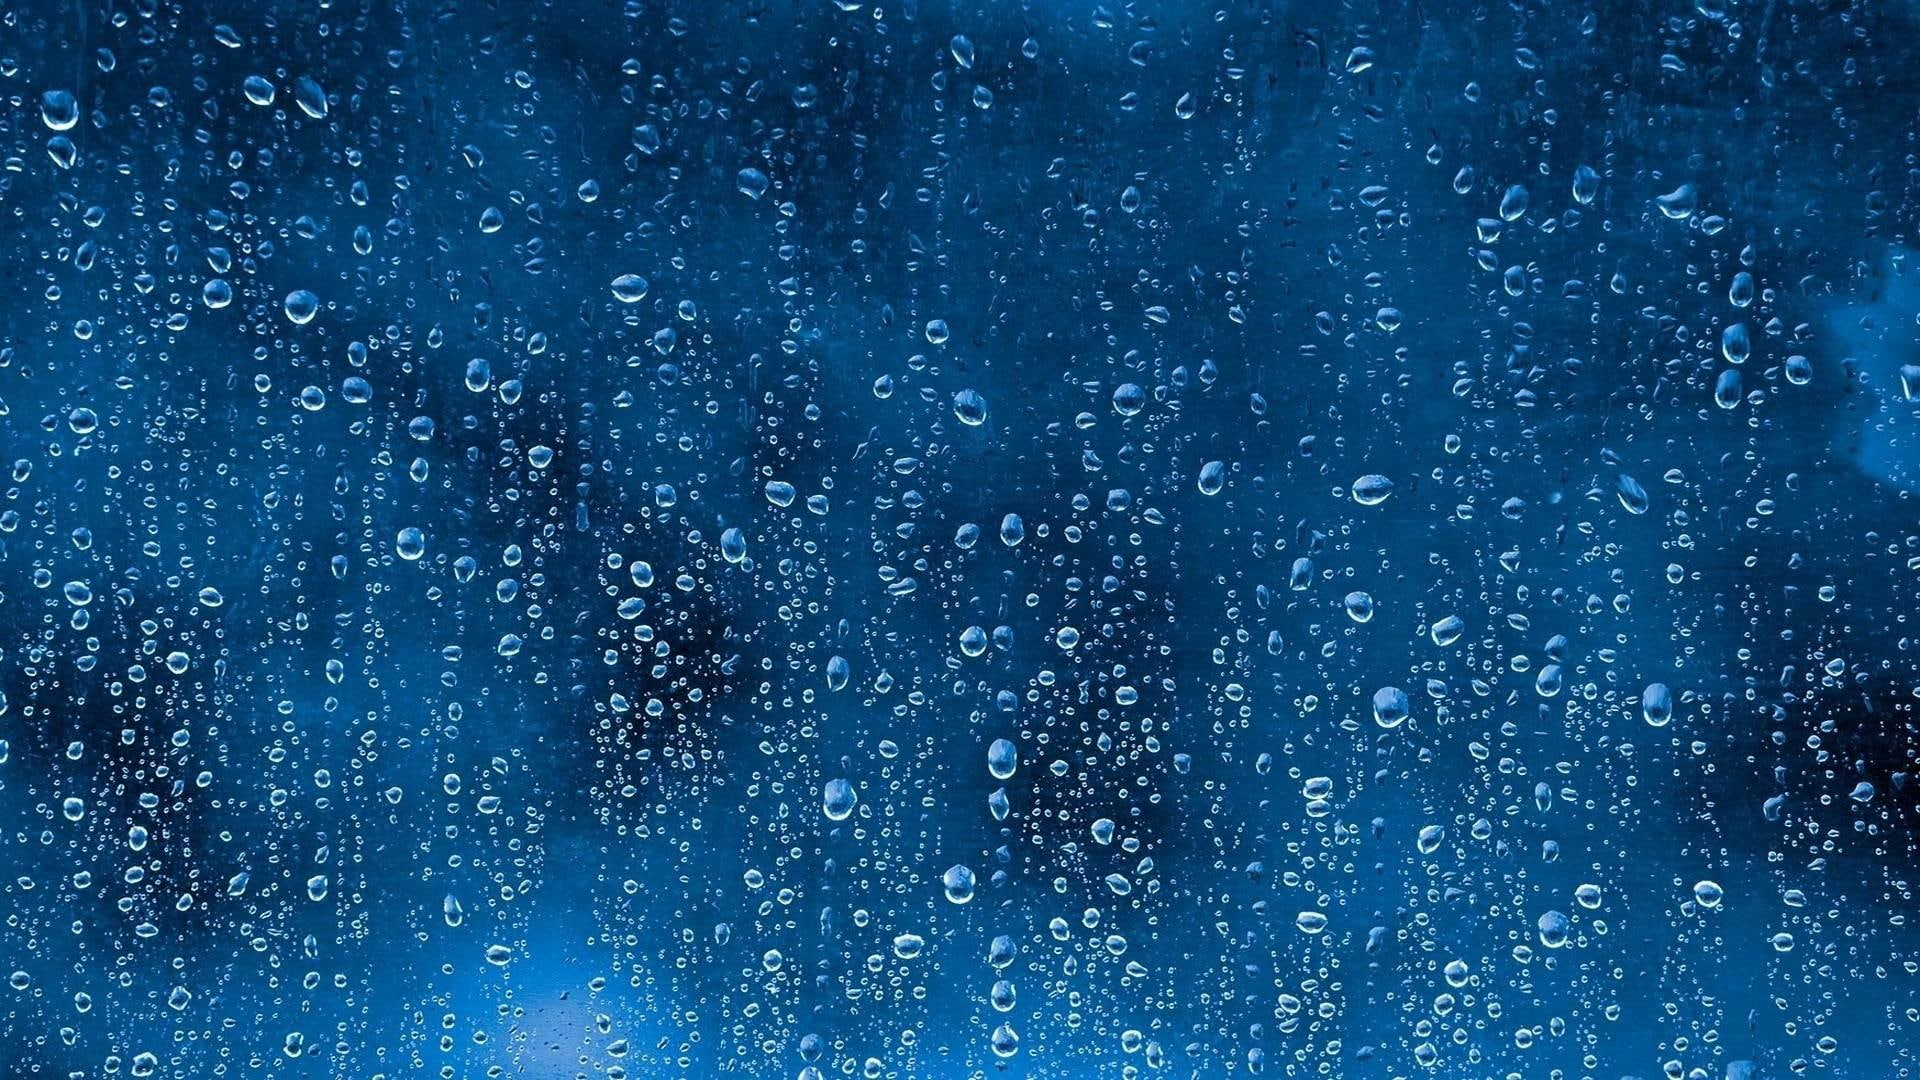 rain, drops, rainy, rain drops, abstract